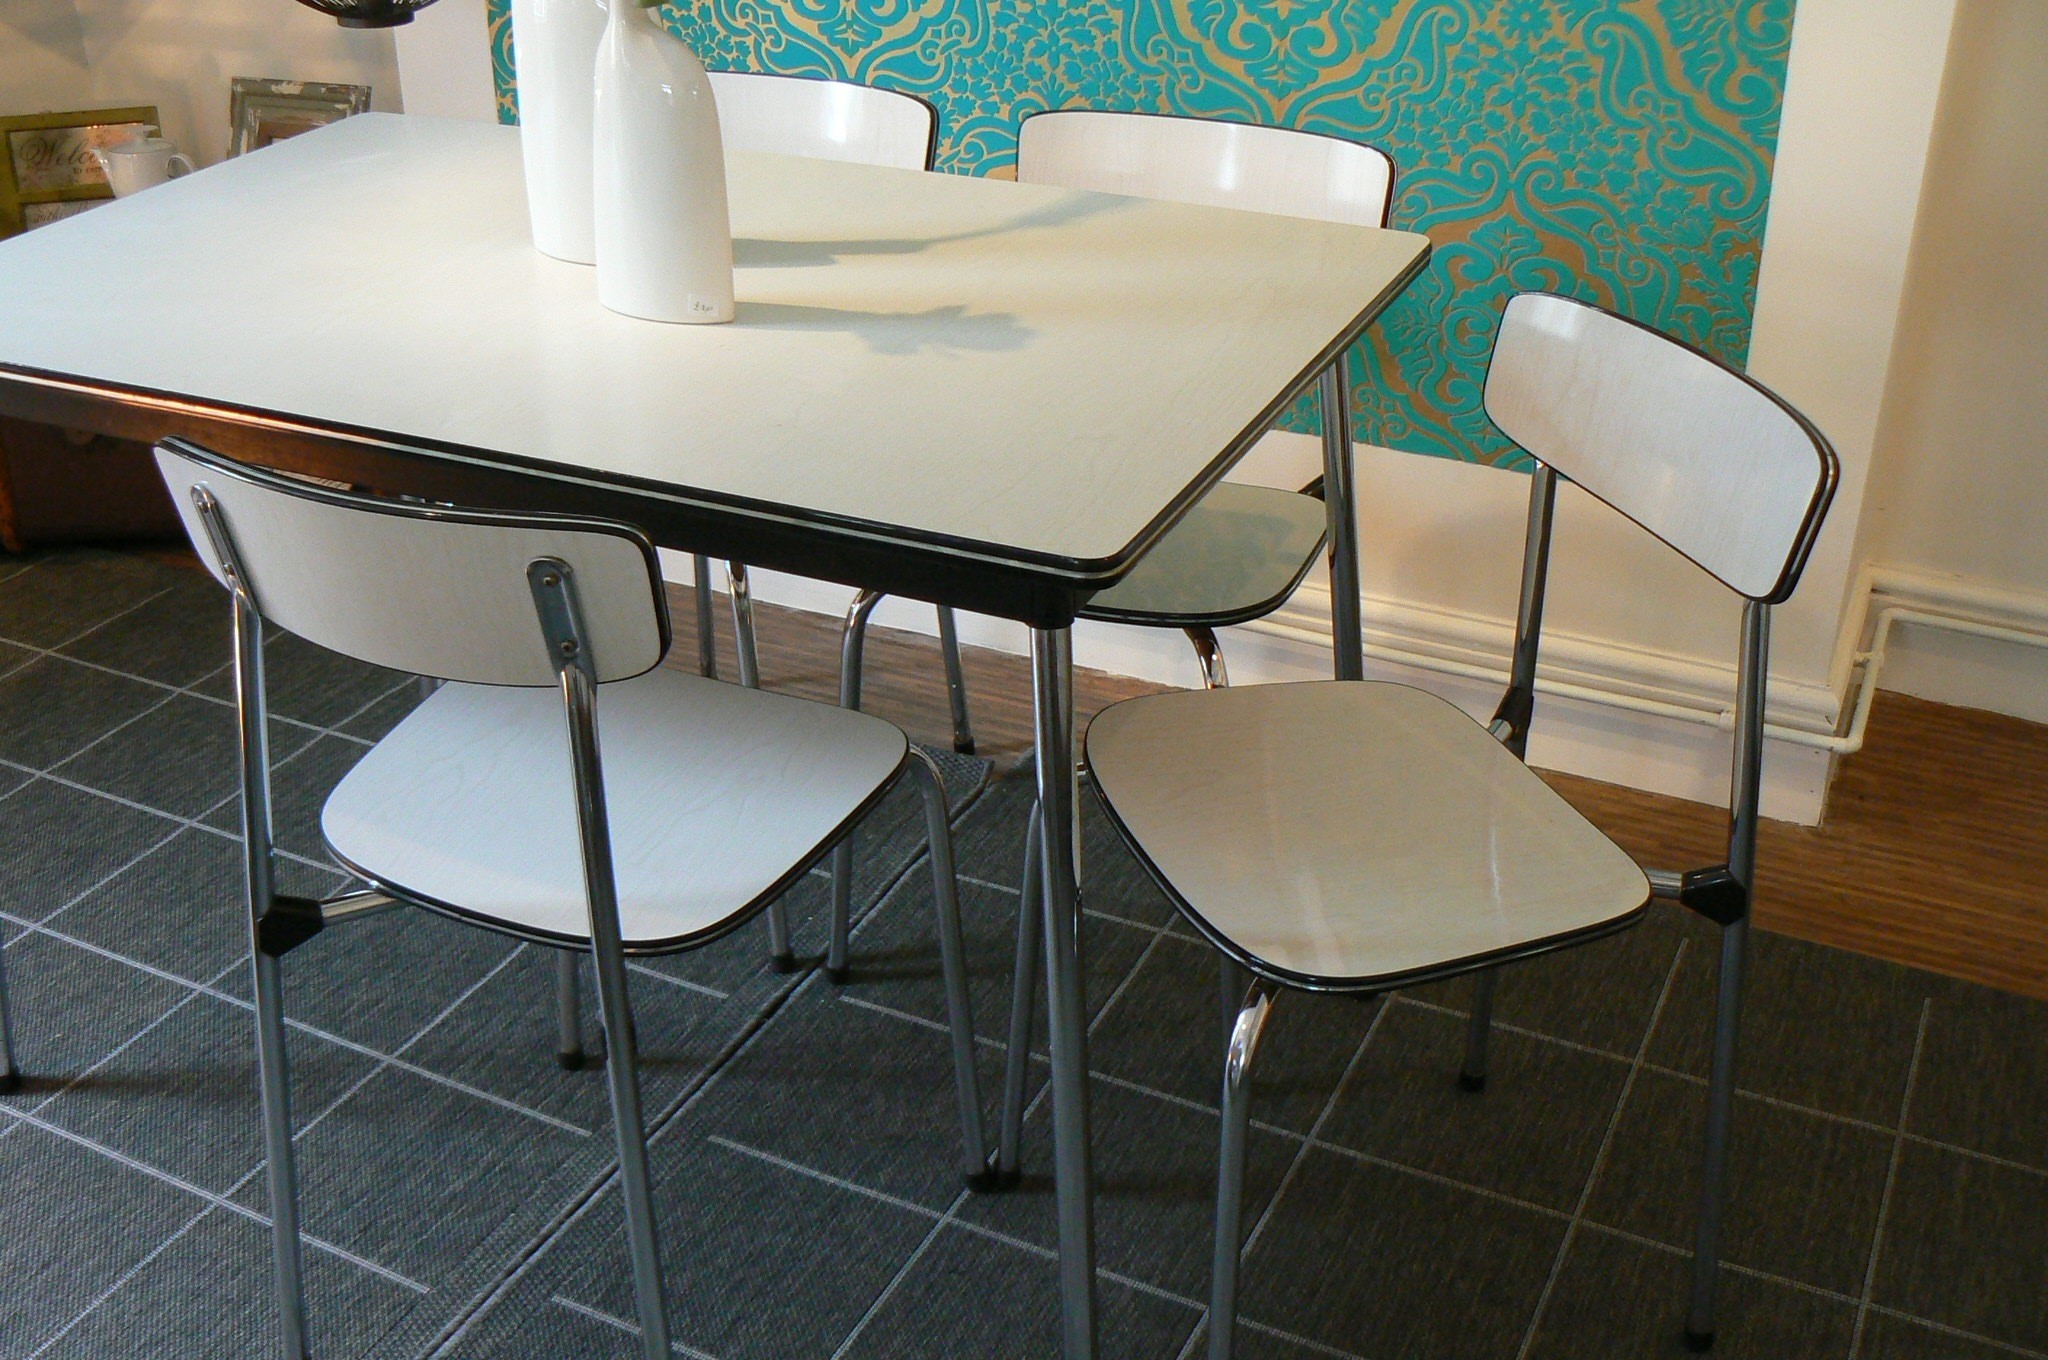 Пластиковый кухонный стол. Стол для кухни MST-9301. Стол кухонный плиточный. Стол кухонный 90х60. Пластиковые столы для кухни.